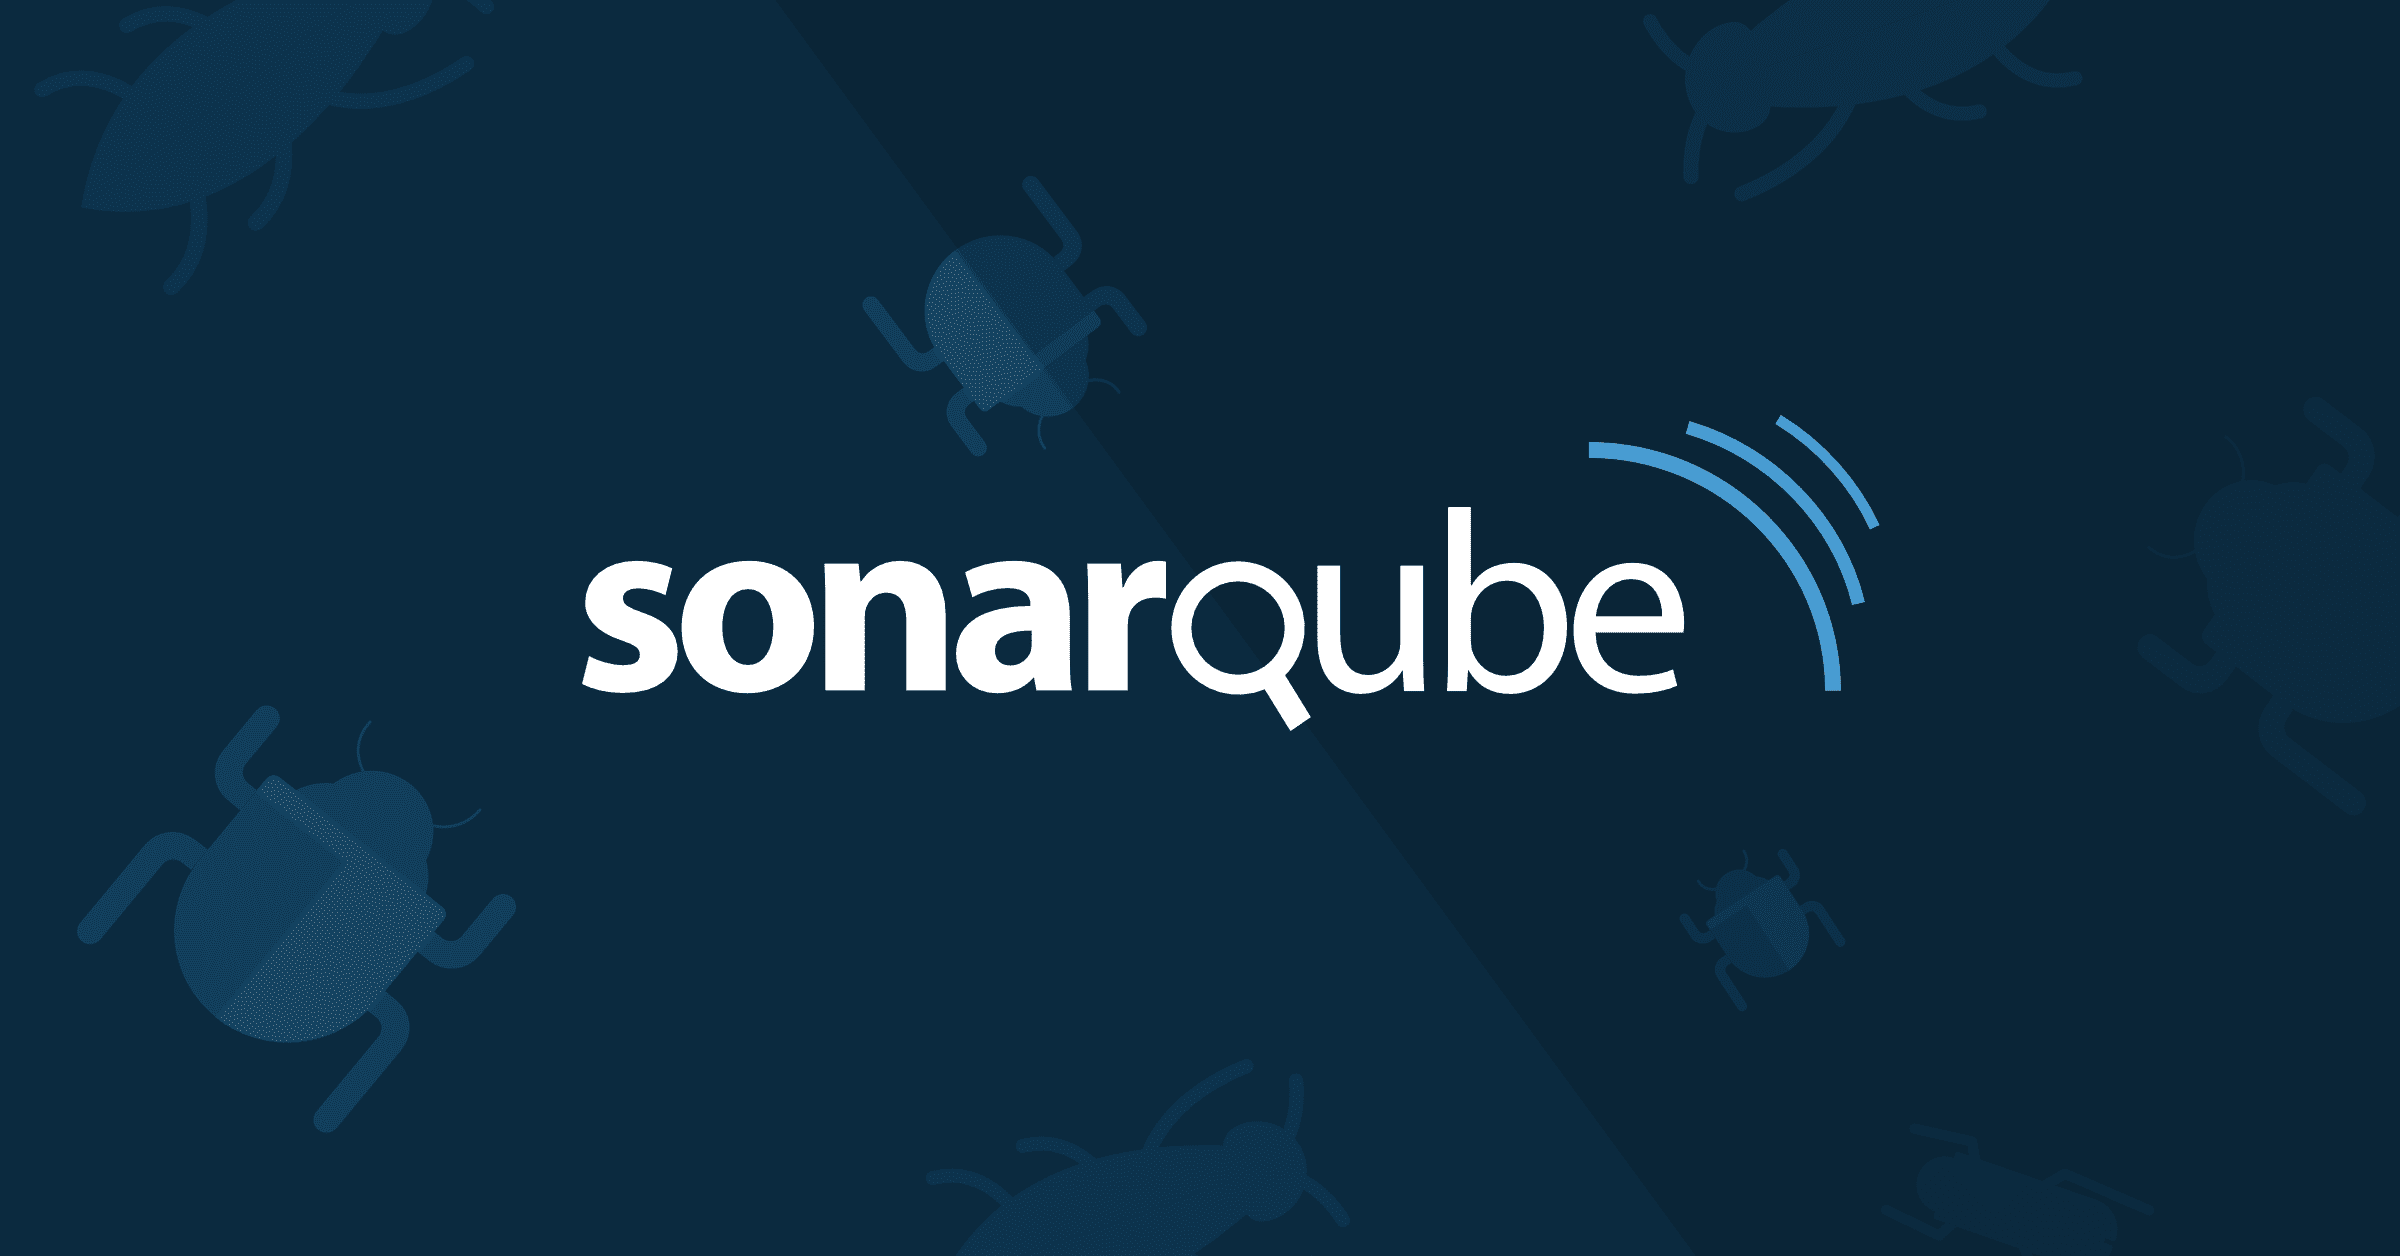 sonar 8 web trial